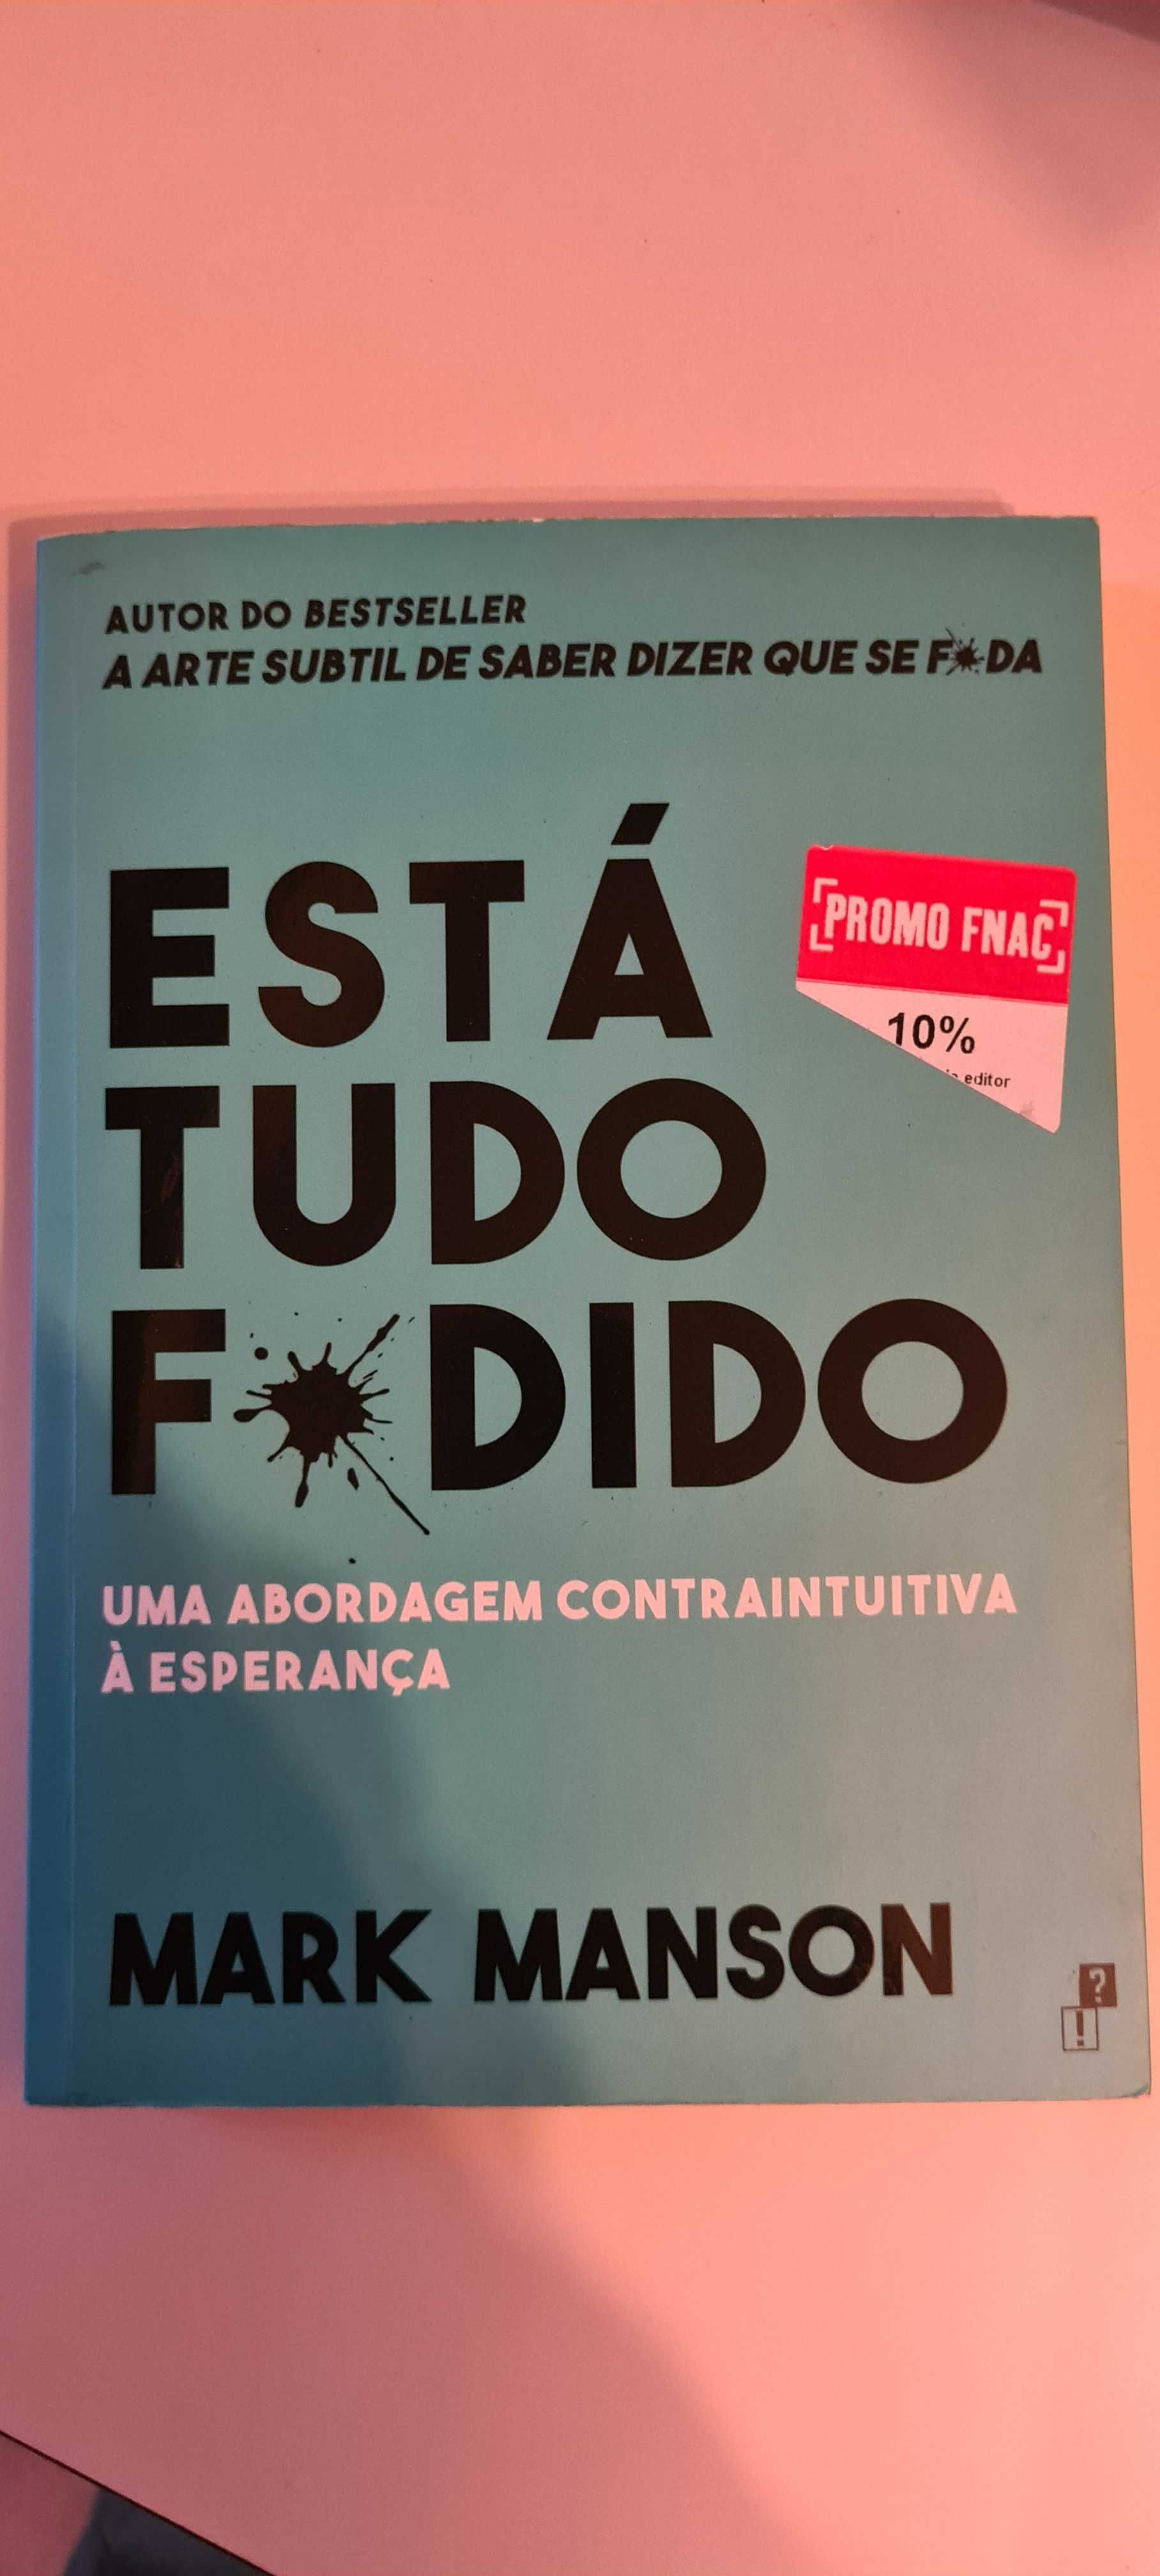 Livro "Está Tudo F*udido" de Mark Manson (Português)